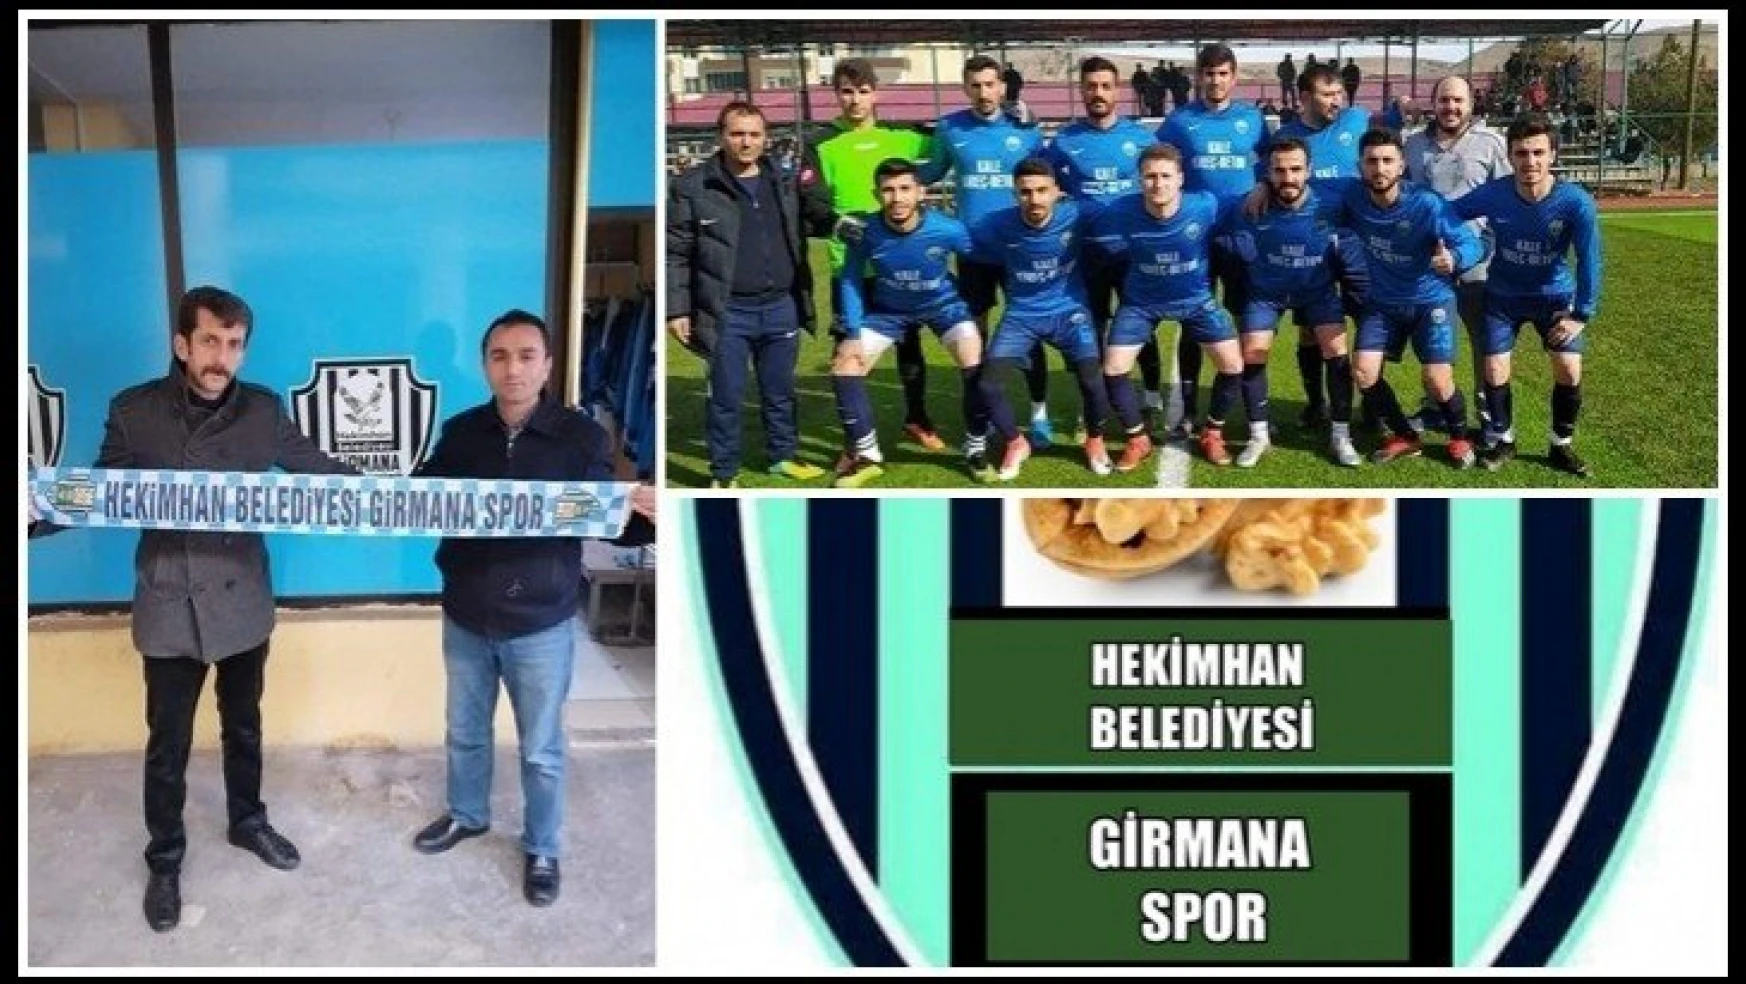 Hekimhan Belediyesi Girmanaspor'da hedef Bal ligi